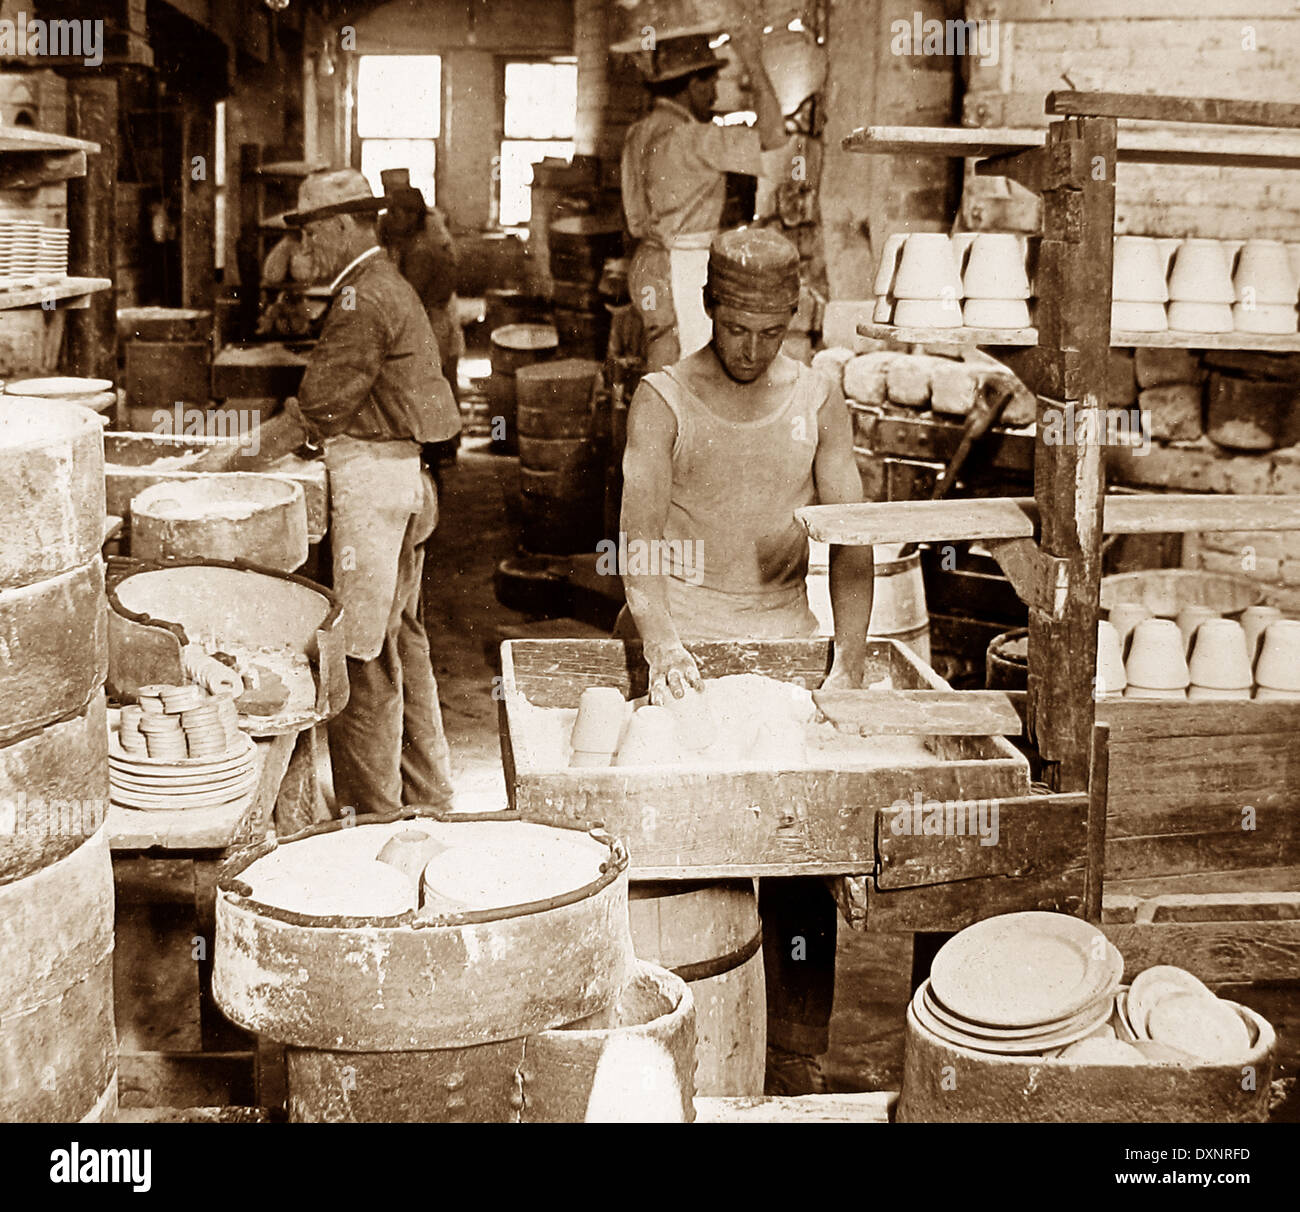 Pottery factory Trenton New Jersey USA early 1900s Stock Photo